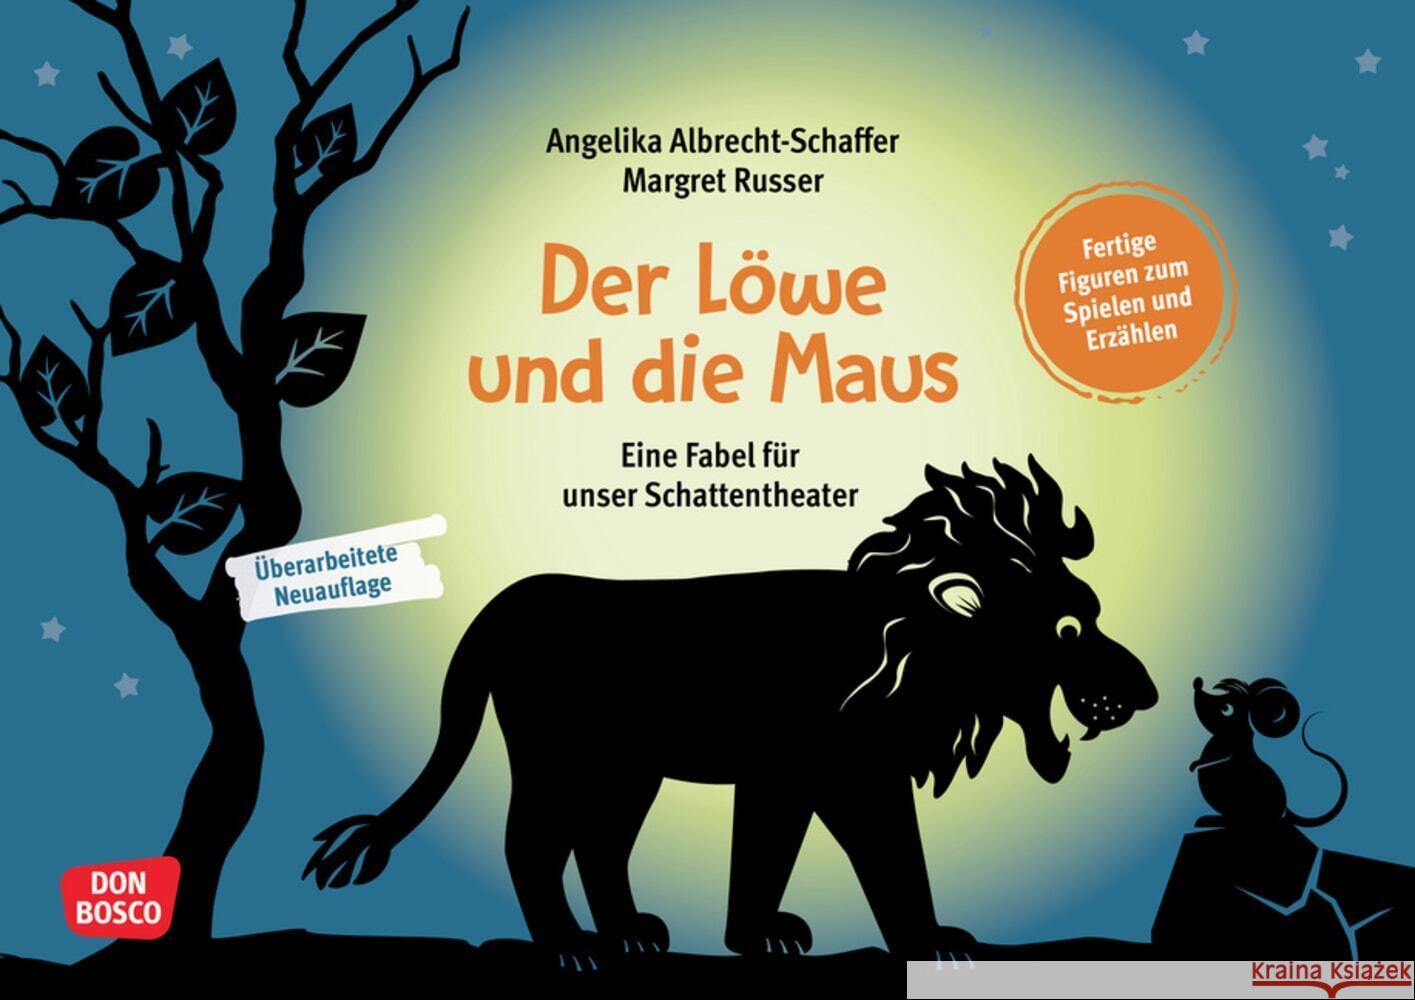 Der Löwe und die Maus, m. 1 Beilage Albrecht-Schaffer, Angelika, Aesop 4260694920053 Don Bosco Medien